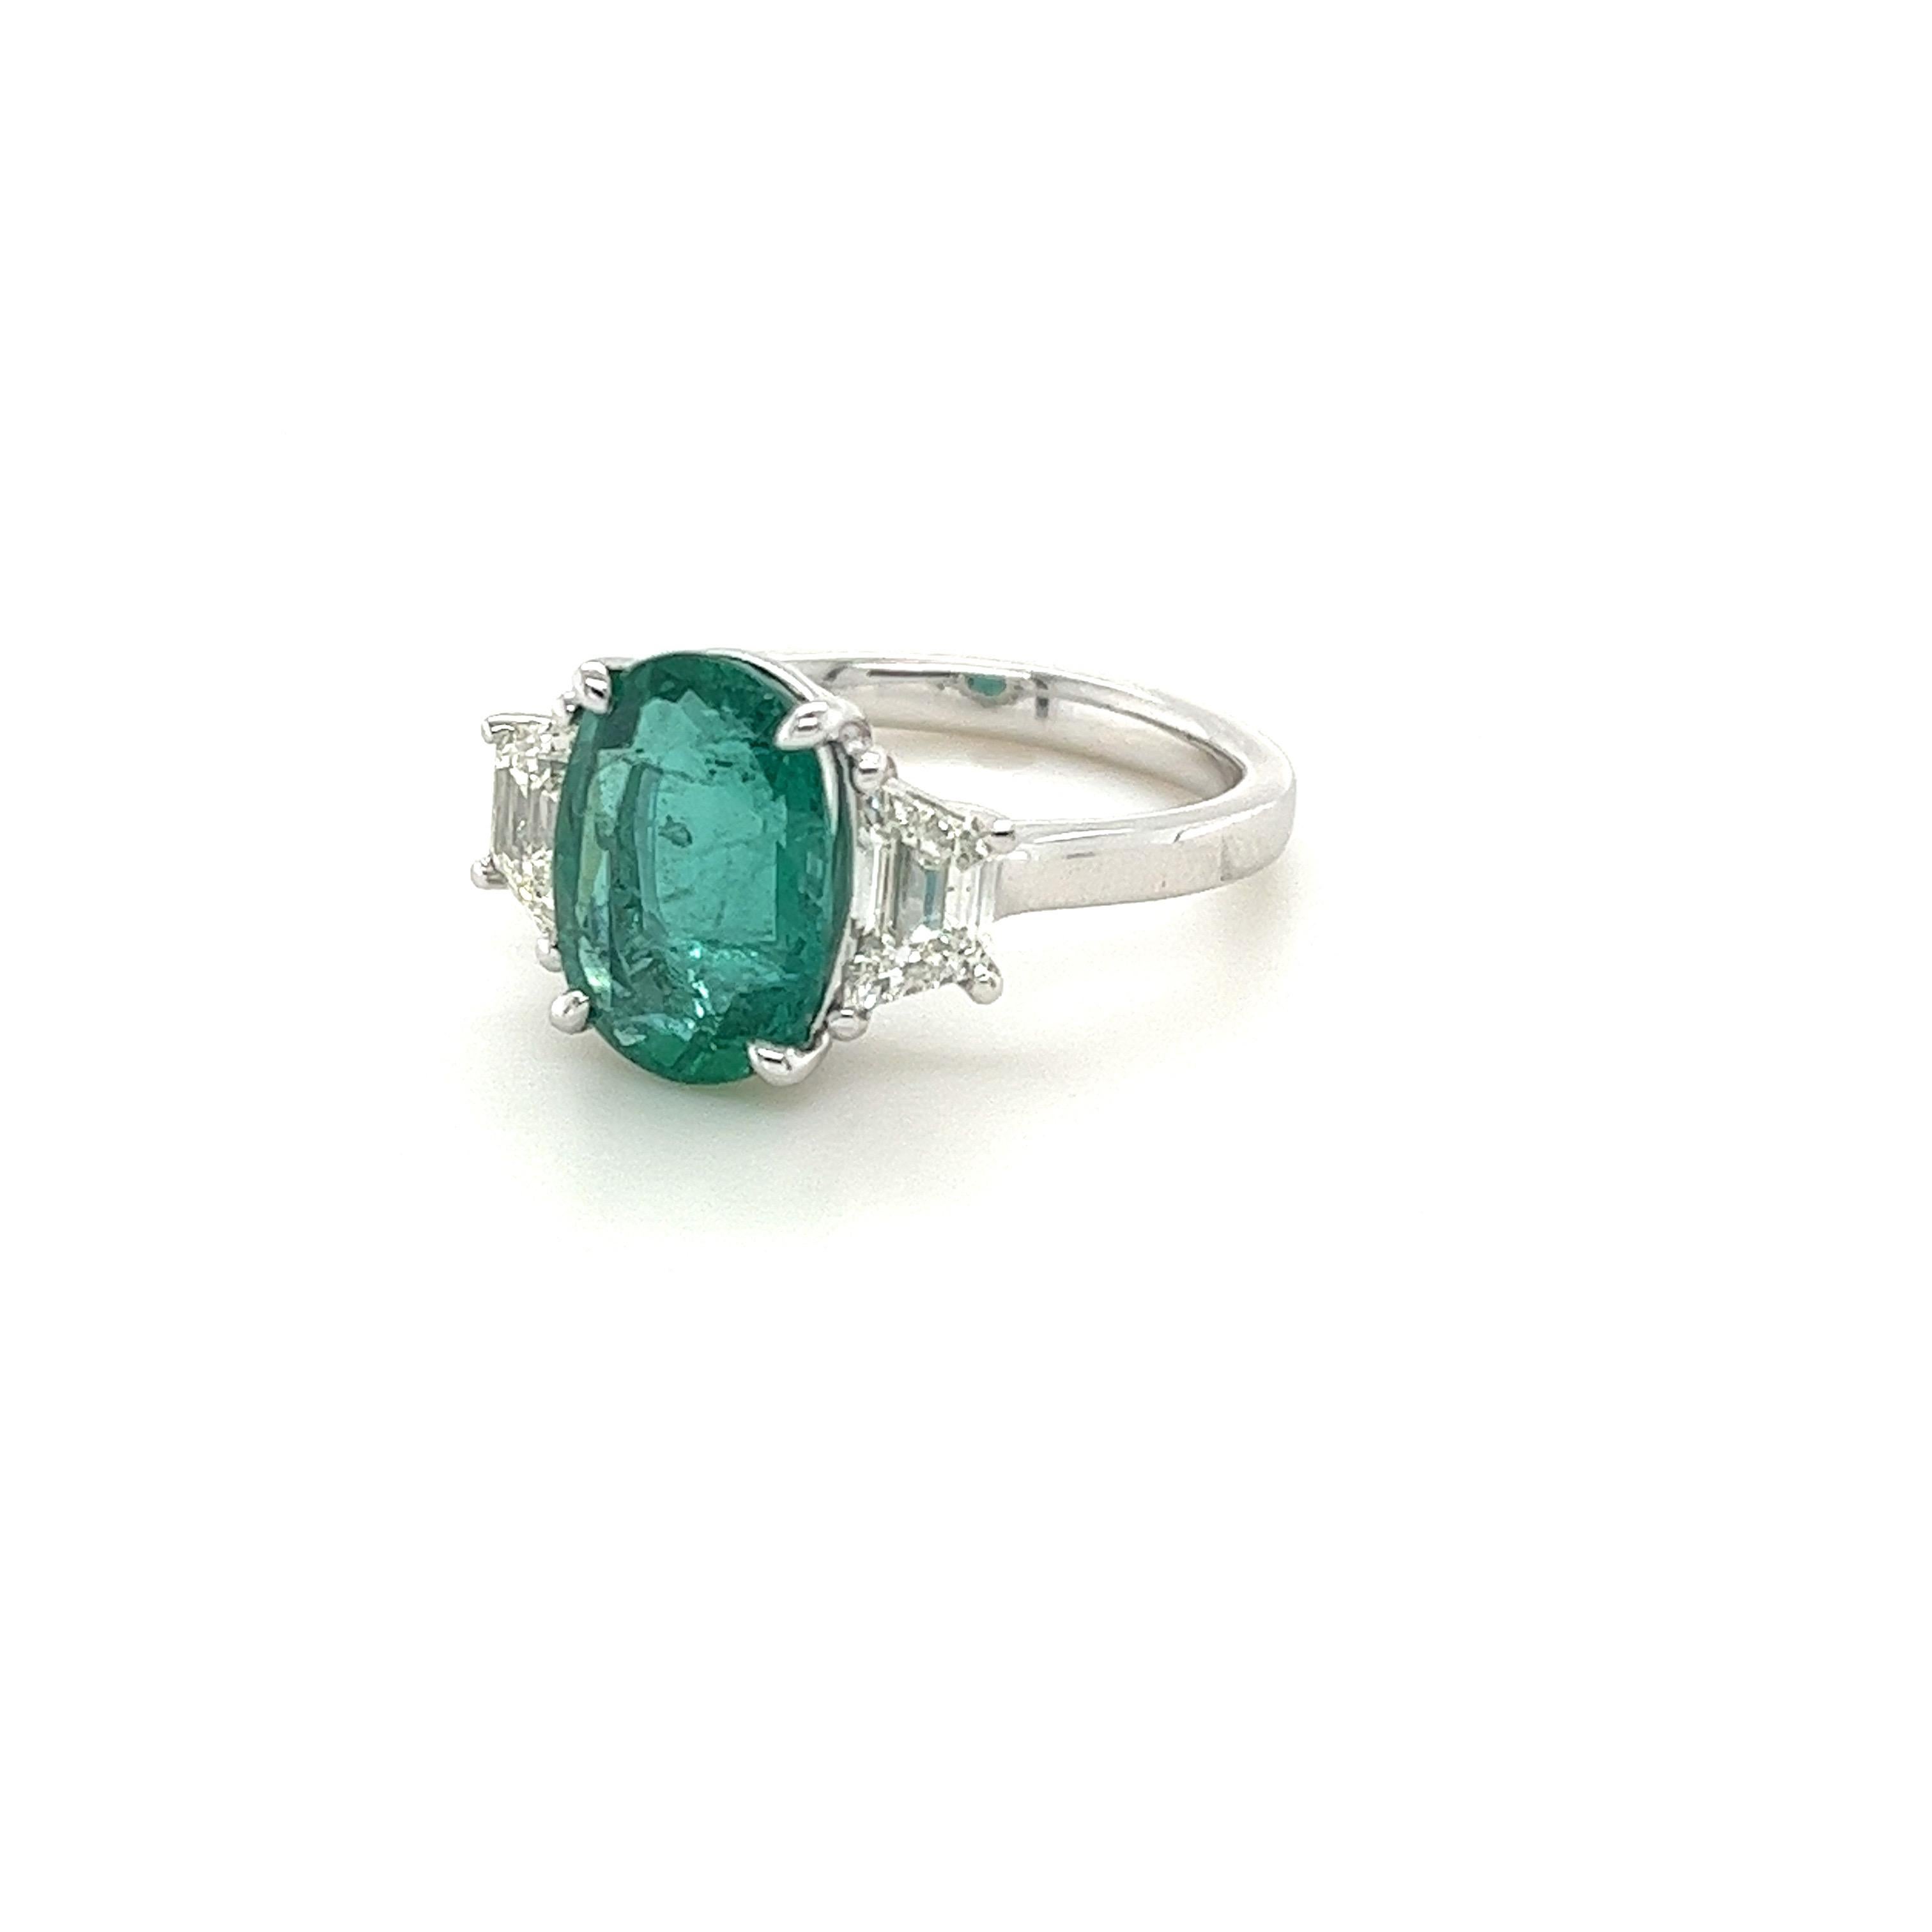 Zertifizierter ovaler Smaragd von 3,32 Karat
Abmessungen (11,44x8,15x5,57) mm
Diamanten mit einem Gewicht von 0,88 Karat
H VS2-SI1
In Platin gefasster Ring
7.77 g